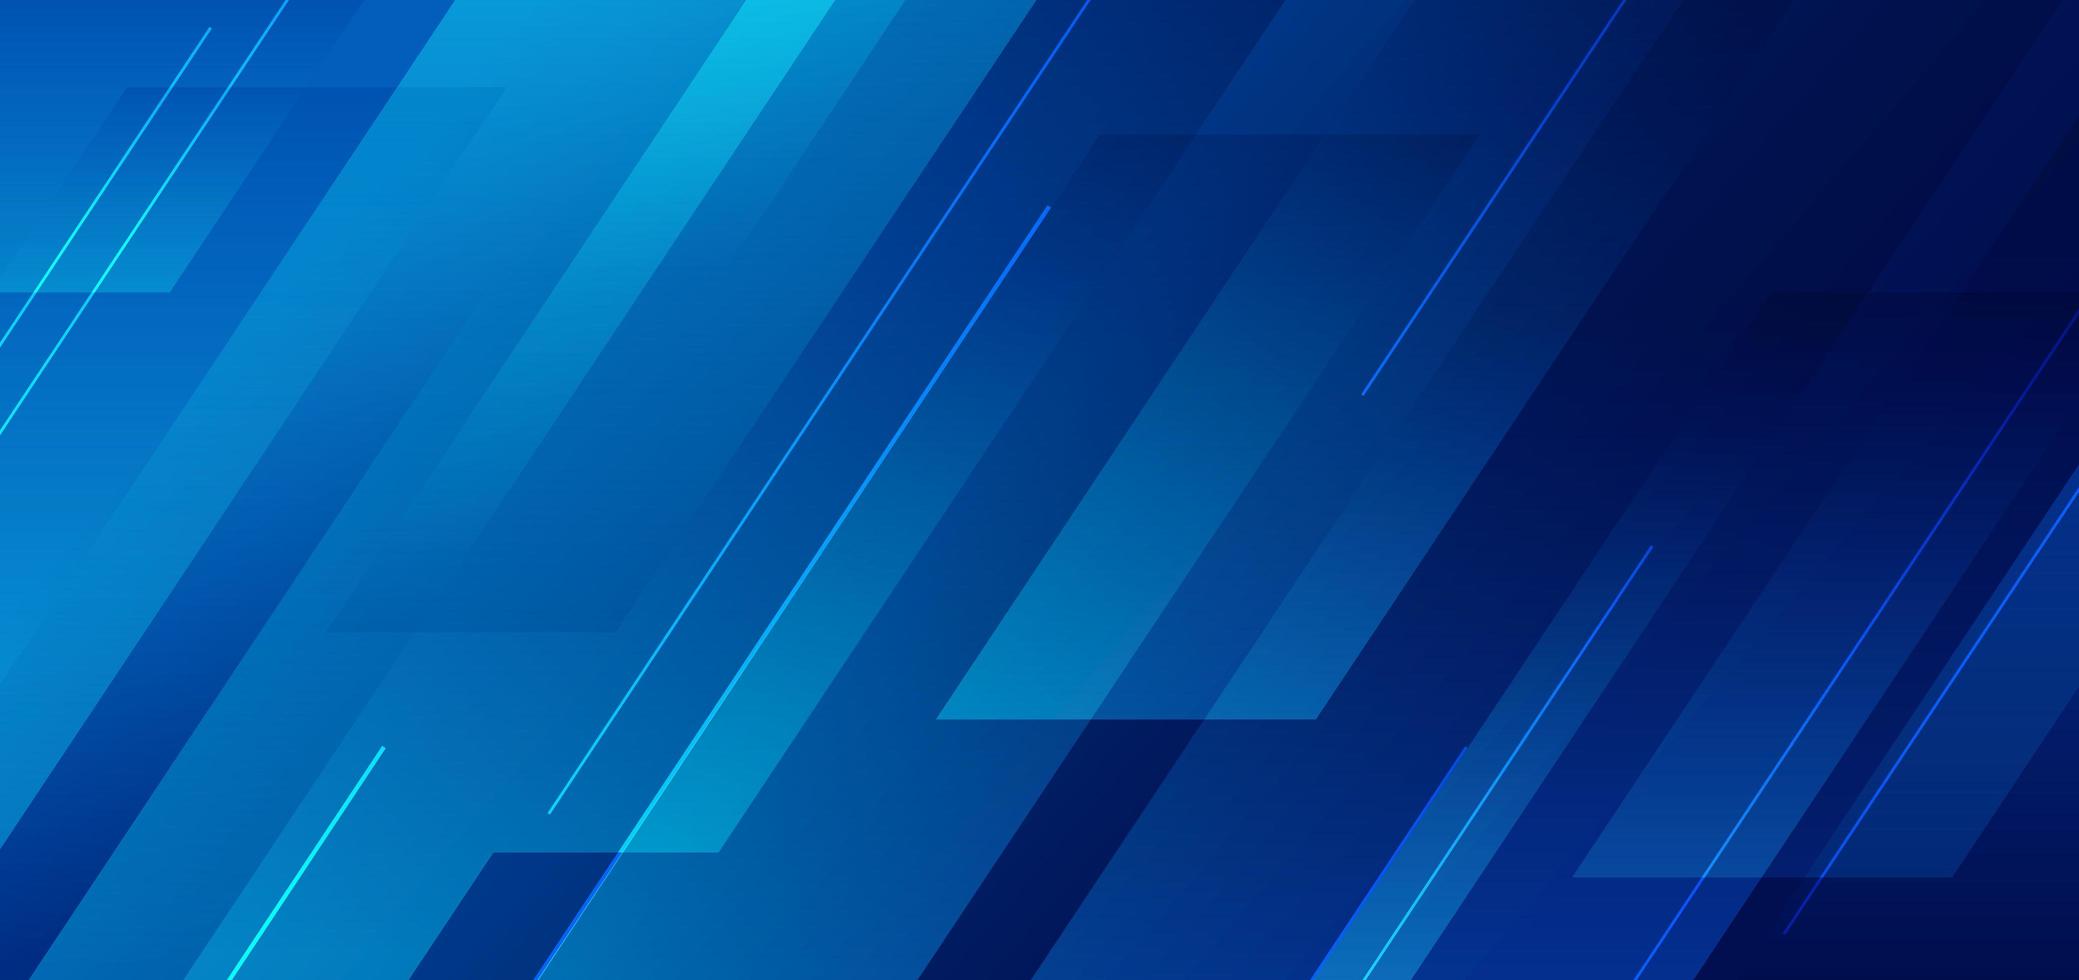 geometrica diagonale blu astratta con sfondo di tecnologia moderna linea. vettore